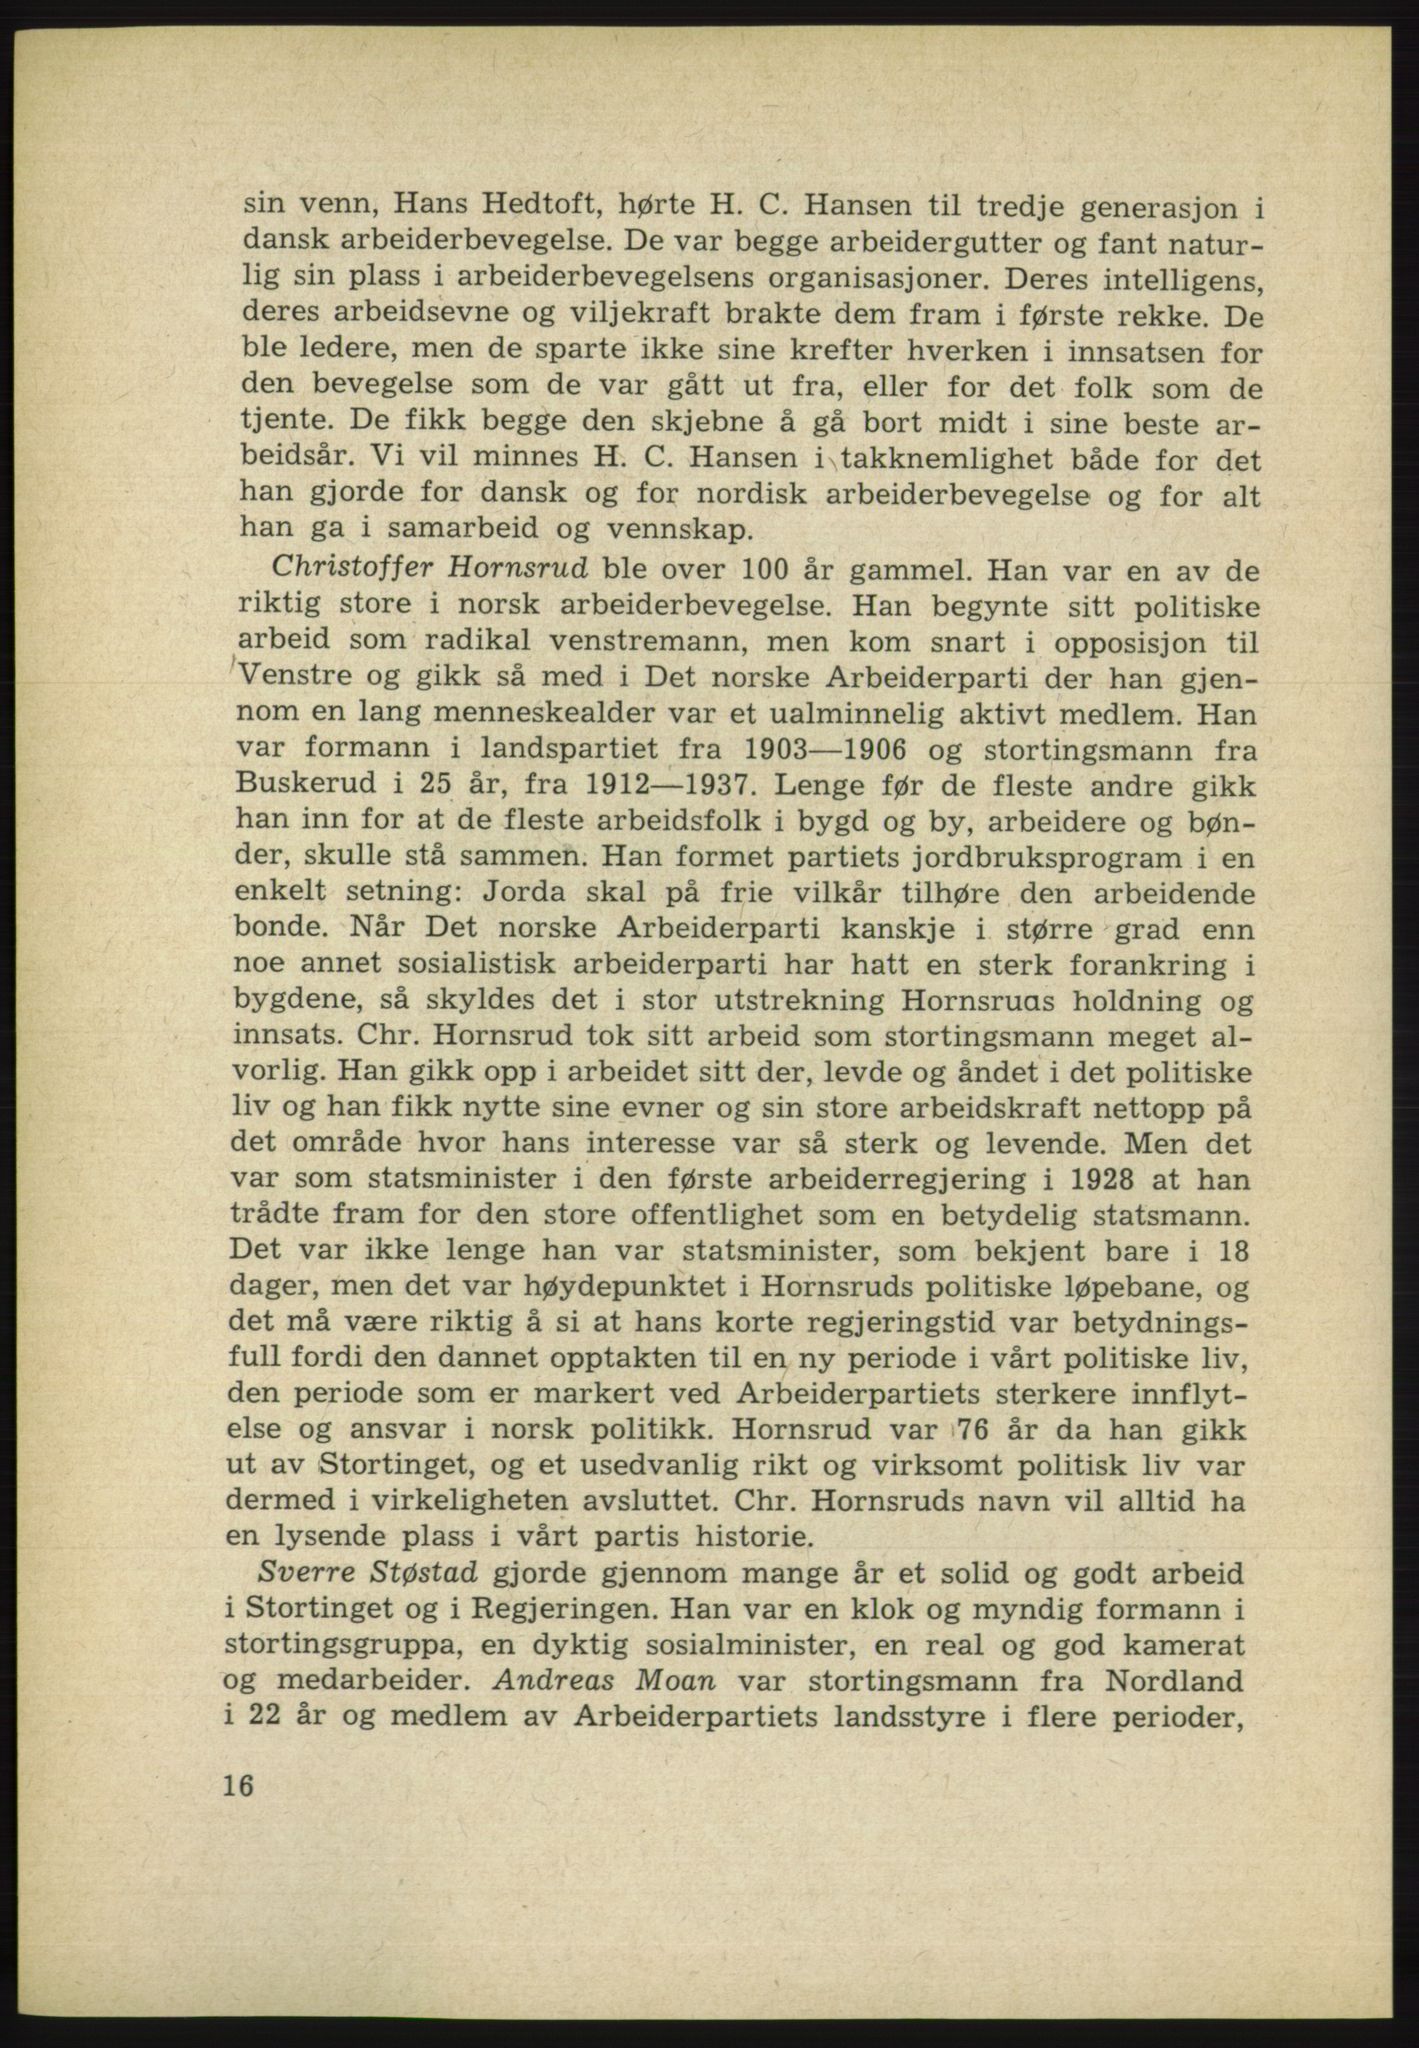 Det norske Arbeiderparti - publikasjoner, AAB/-/-/-: Protokoll over forhandlingene på det 38. ordinære landsmøte 9.-11. april 1961 i Oslo, 1961, s. 16